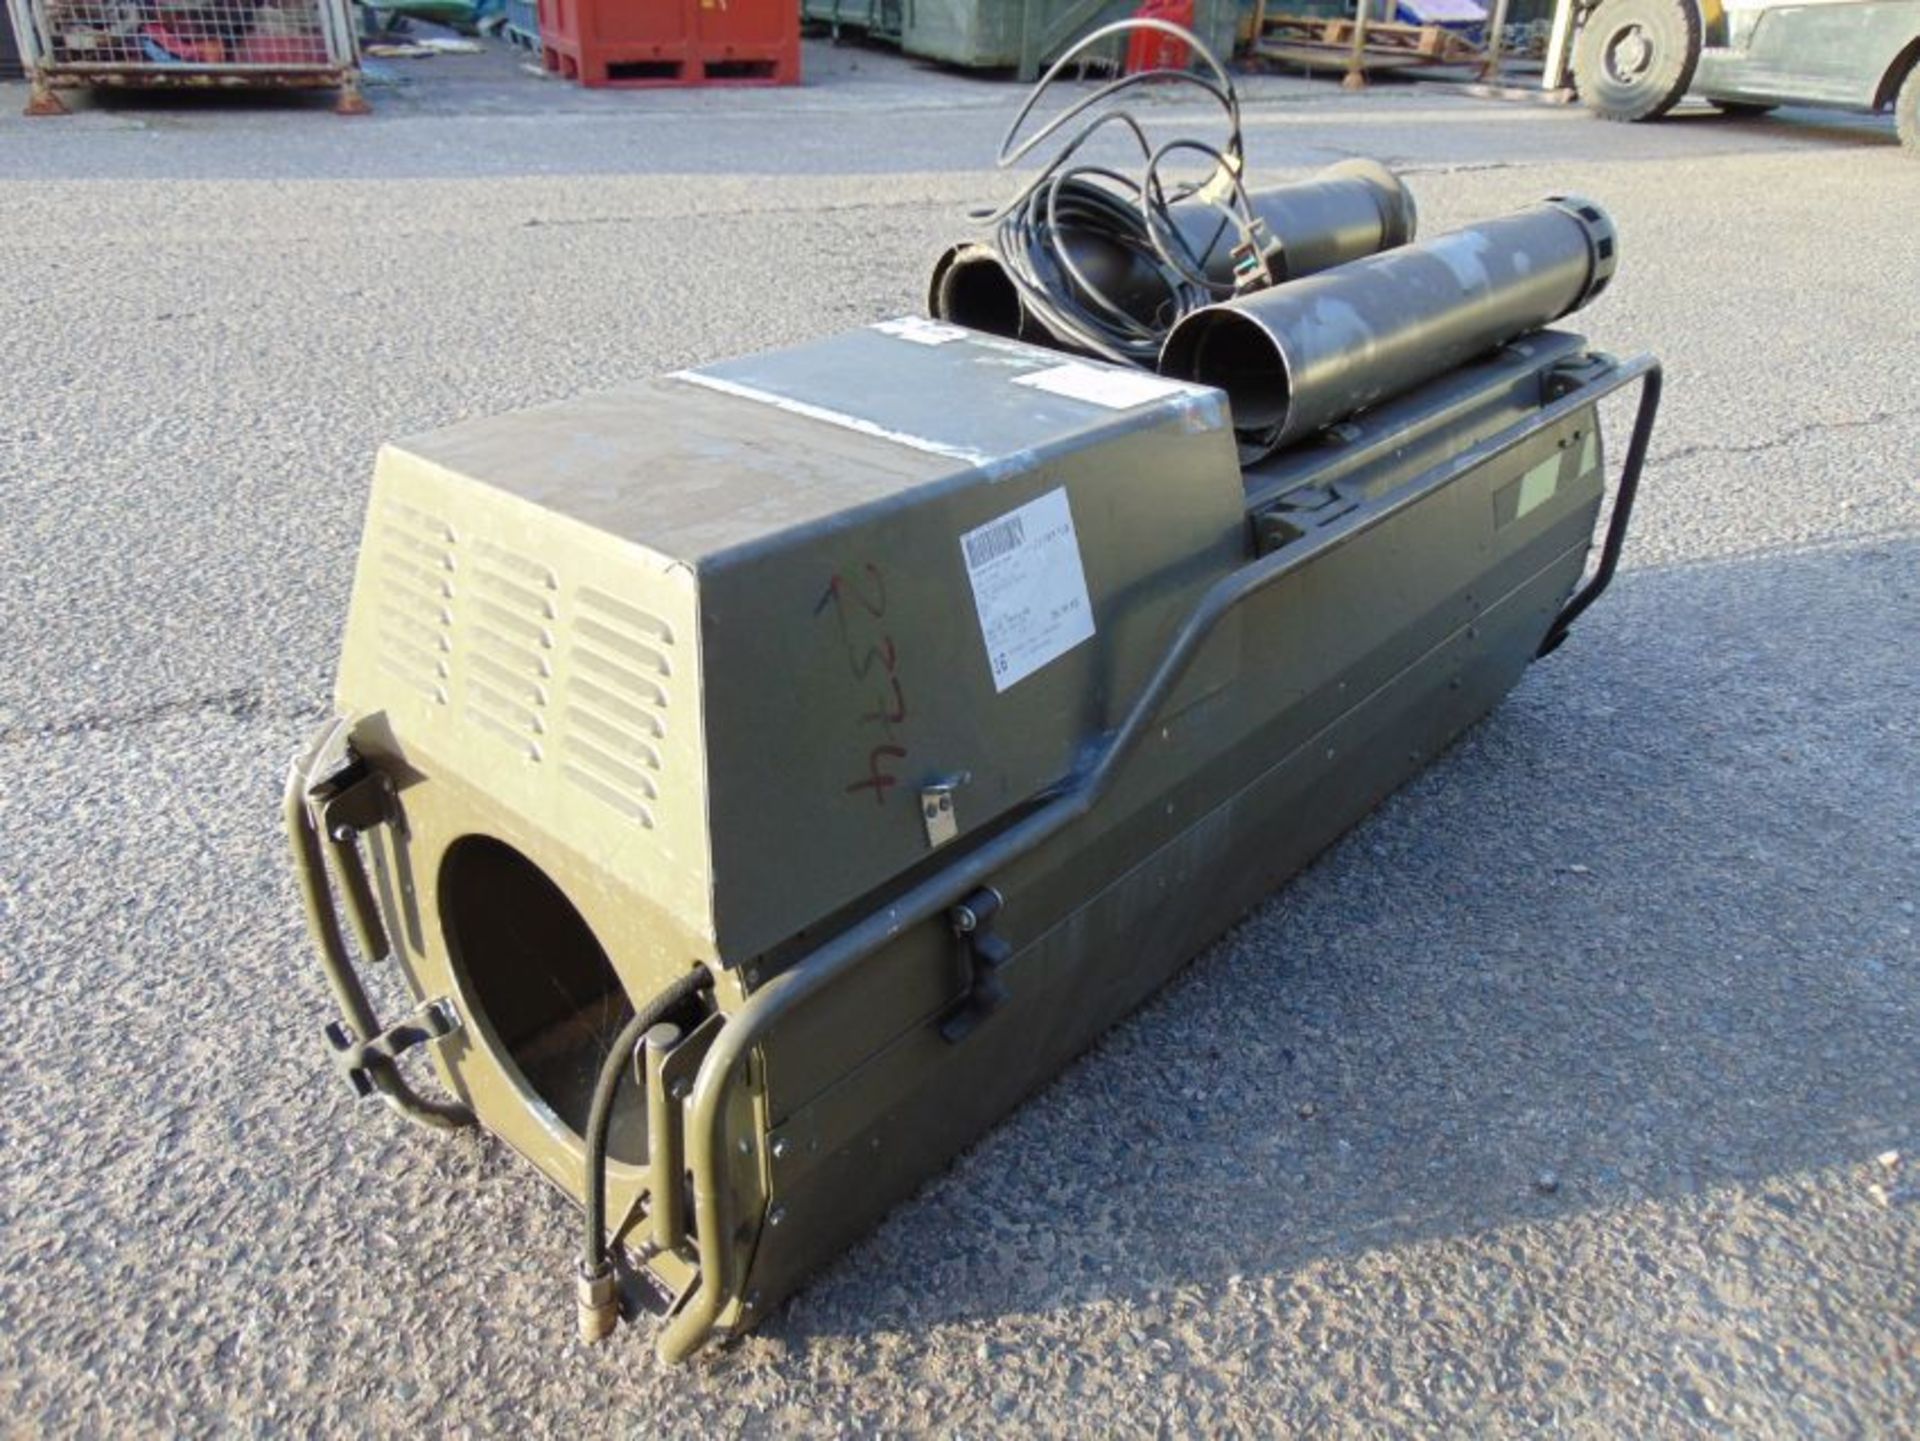 Dantherm VAM-15 Workshop oil/kero/diesel heater c/w fittings as shown - Image 2 of 8